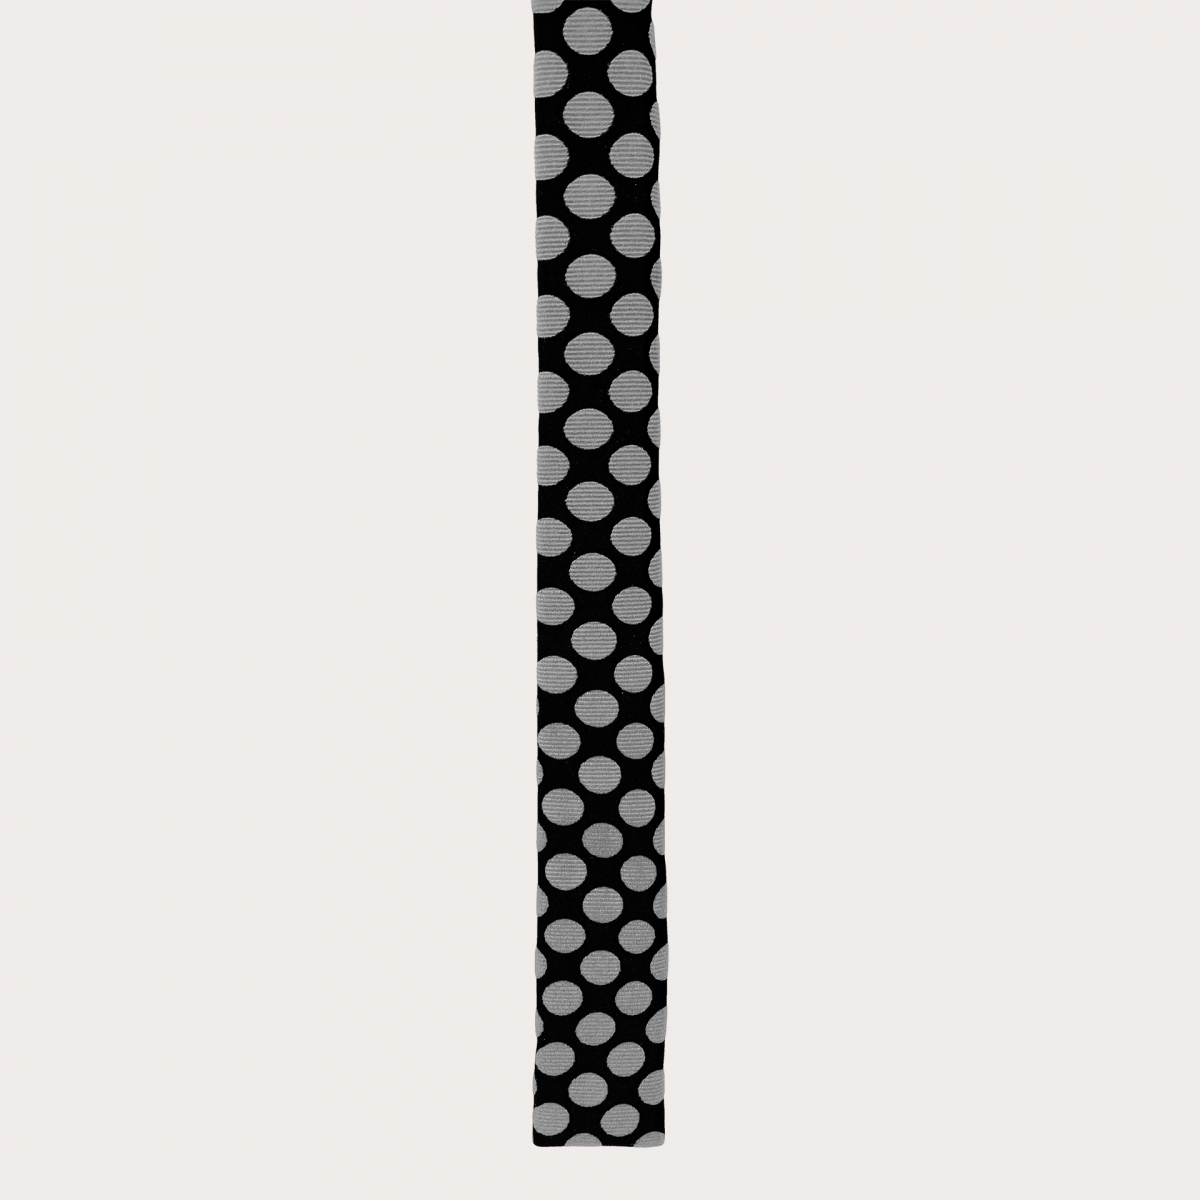 Cravatta sottile in seta con punta quadrata, nero con pois bianchi